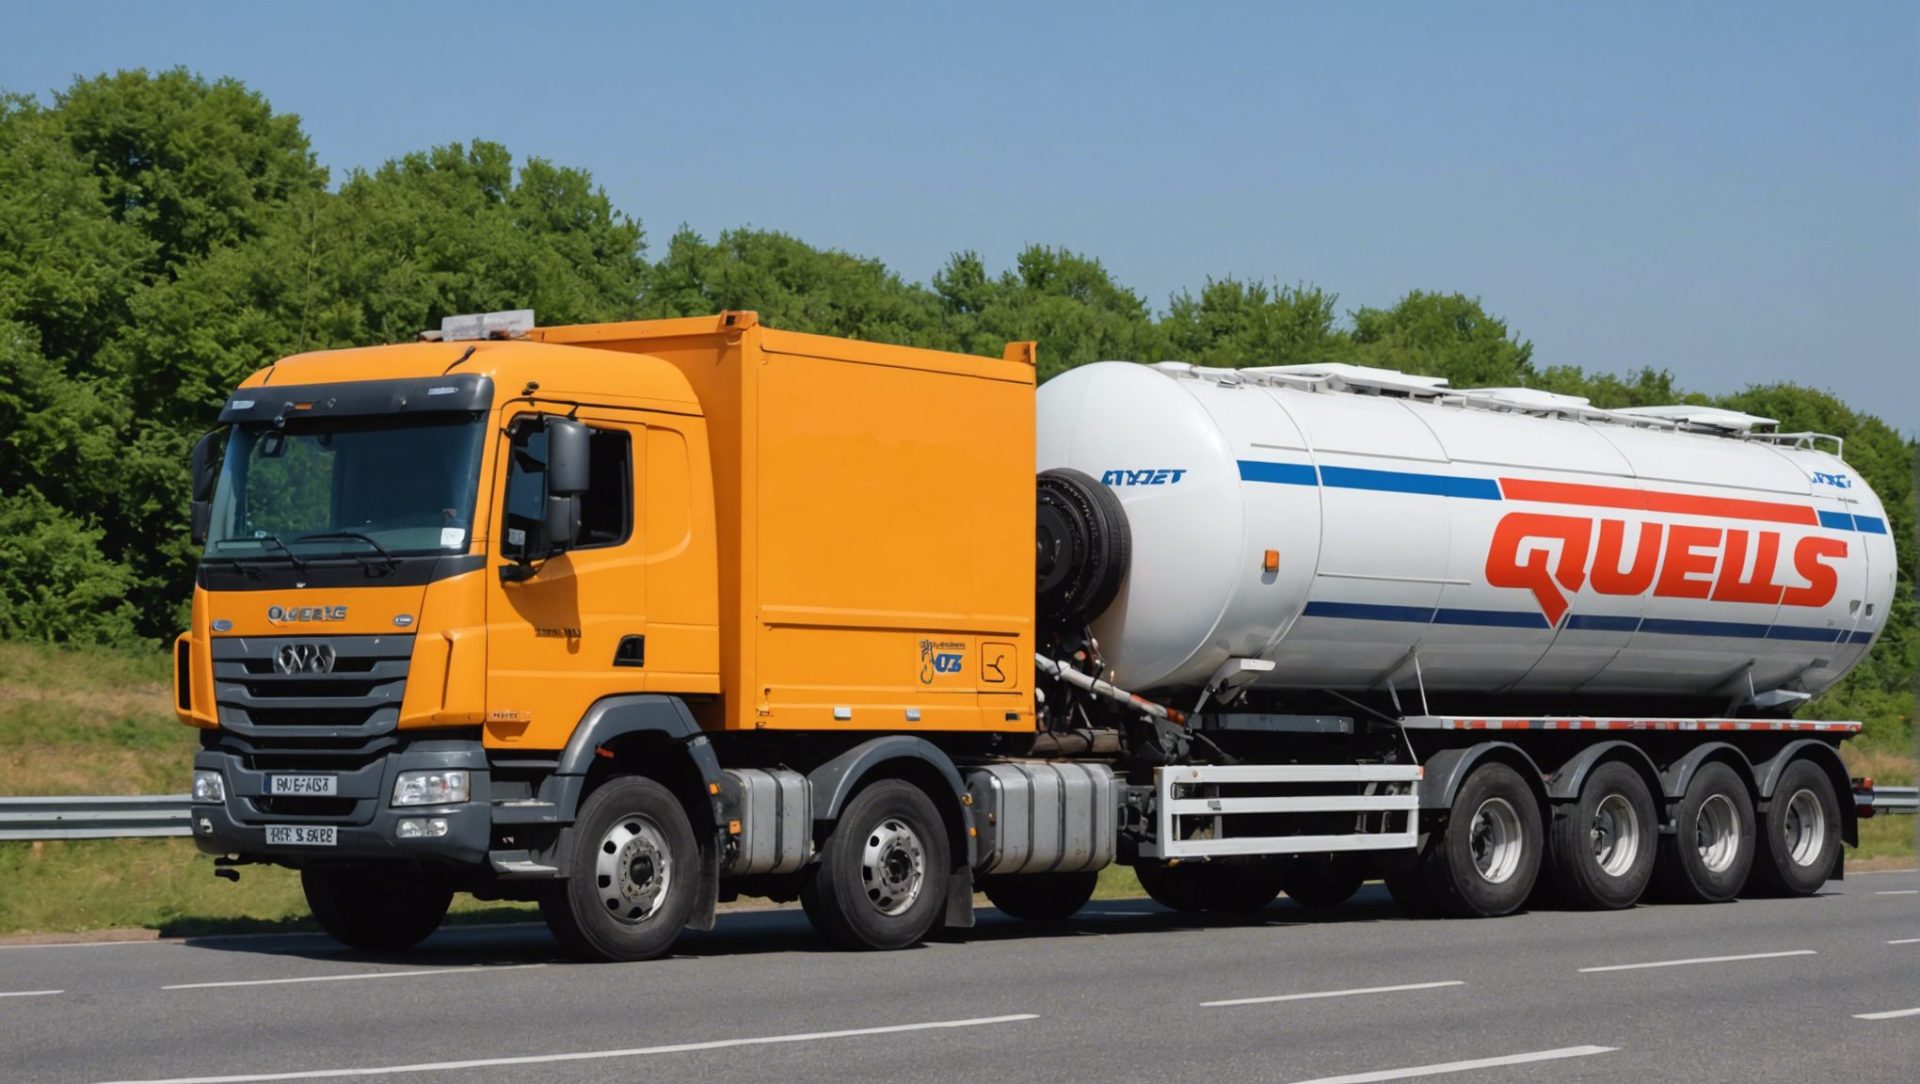 découvrez les modèles de camions les plus fiables dans le transport et choisissez la performance et la fiabilité pour votre activité logistique.